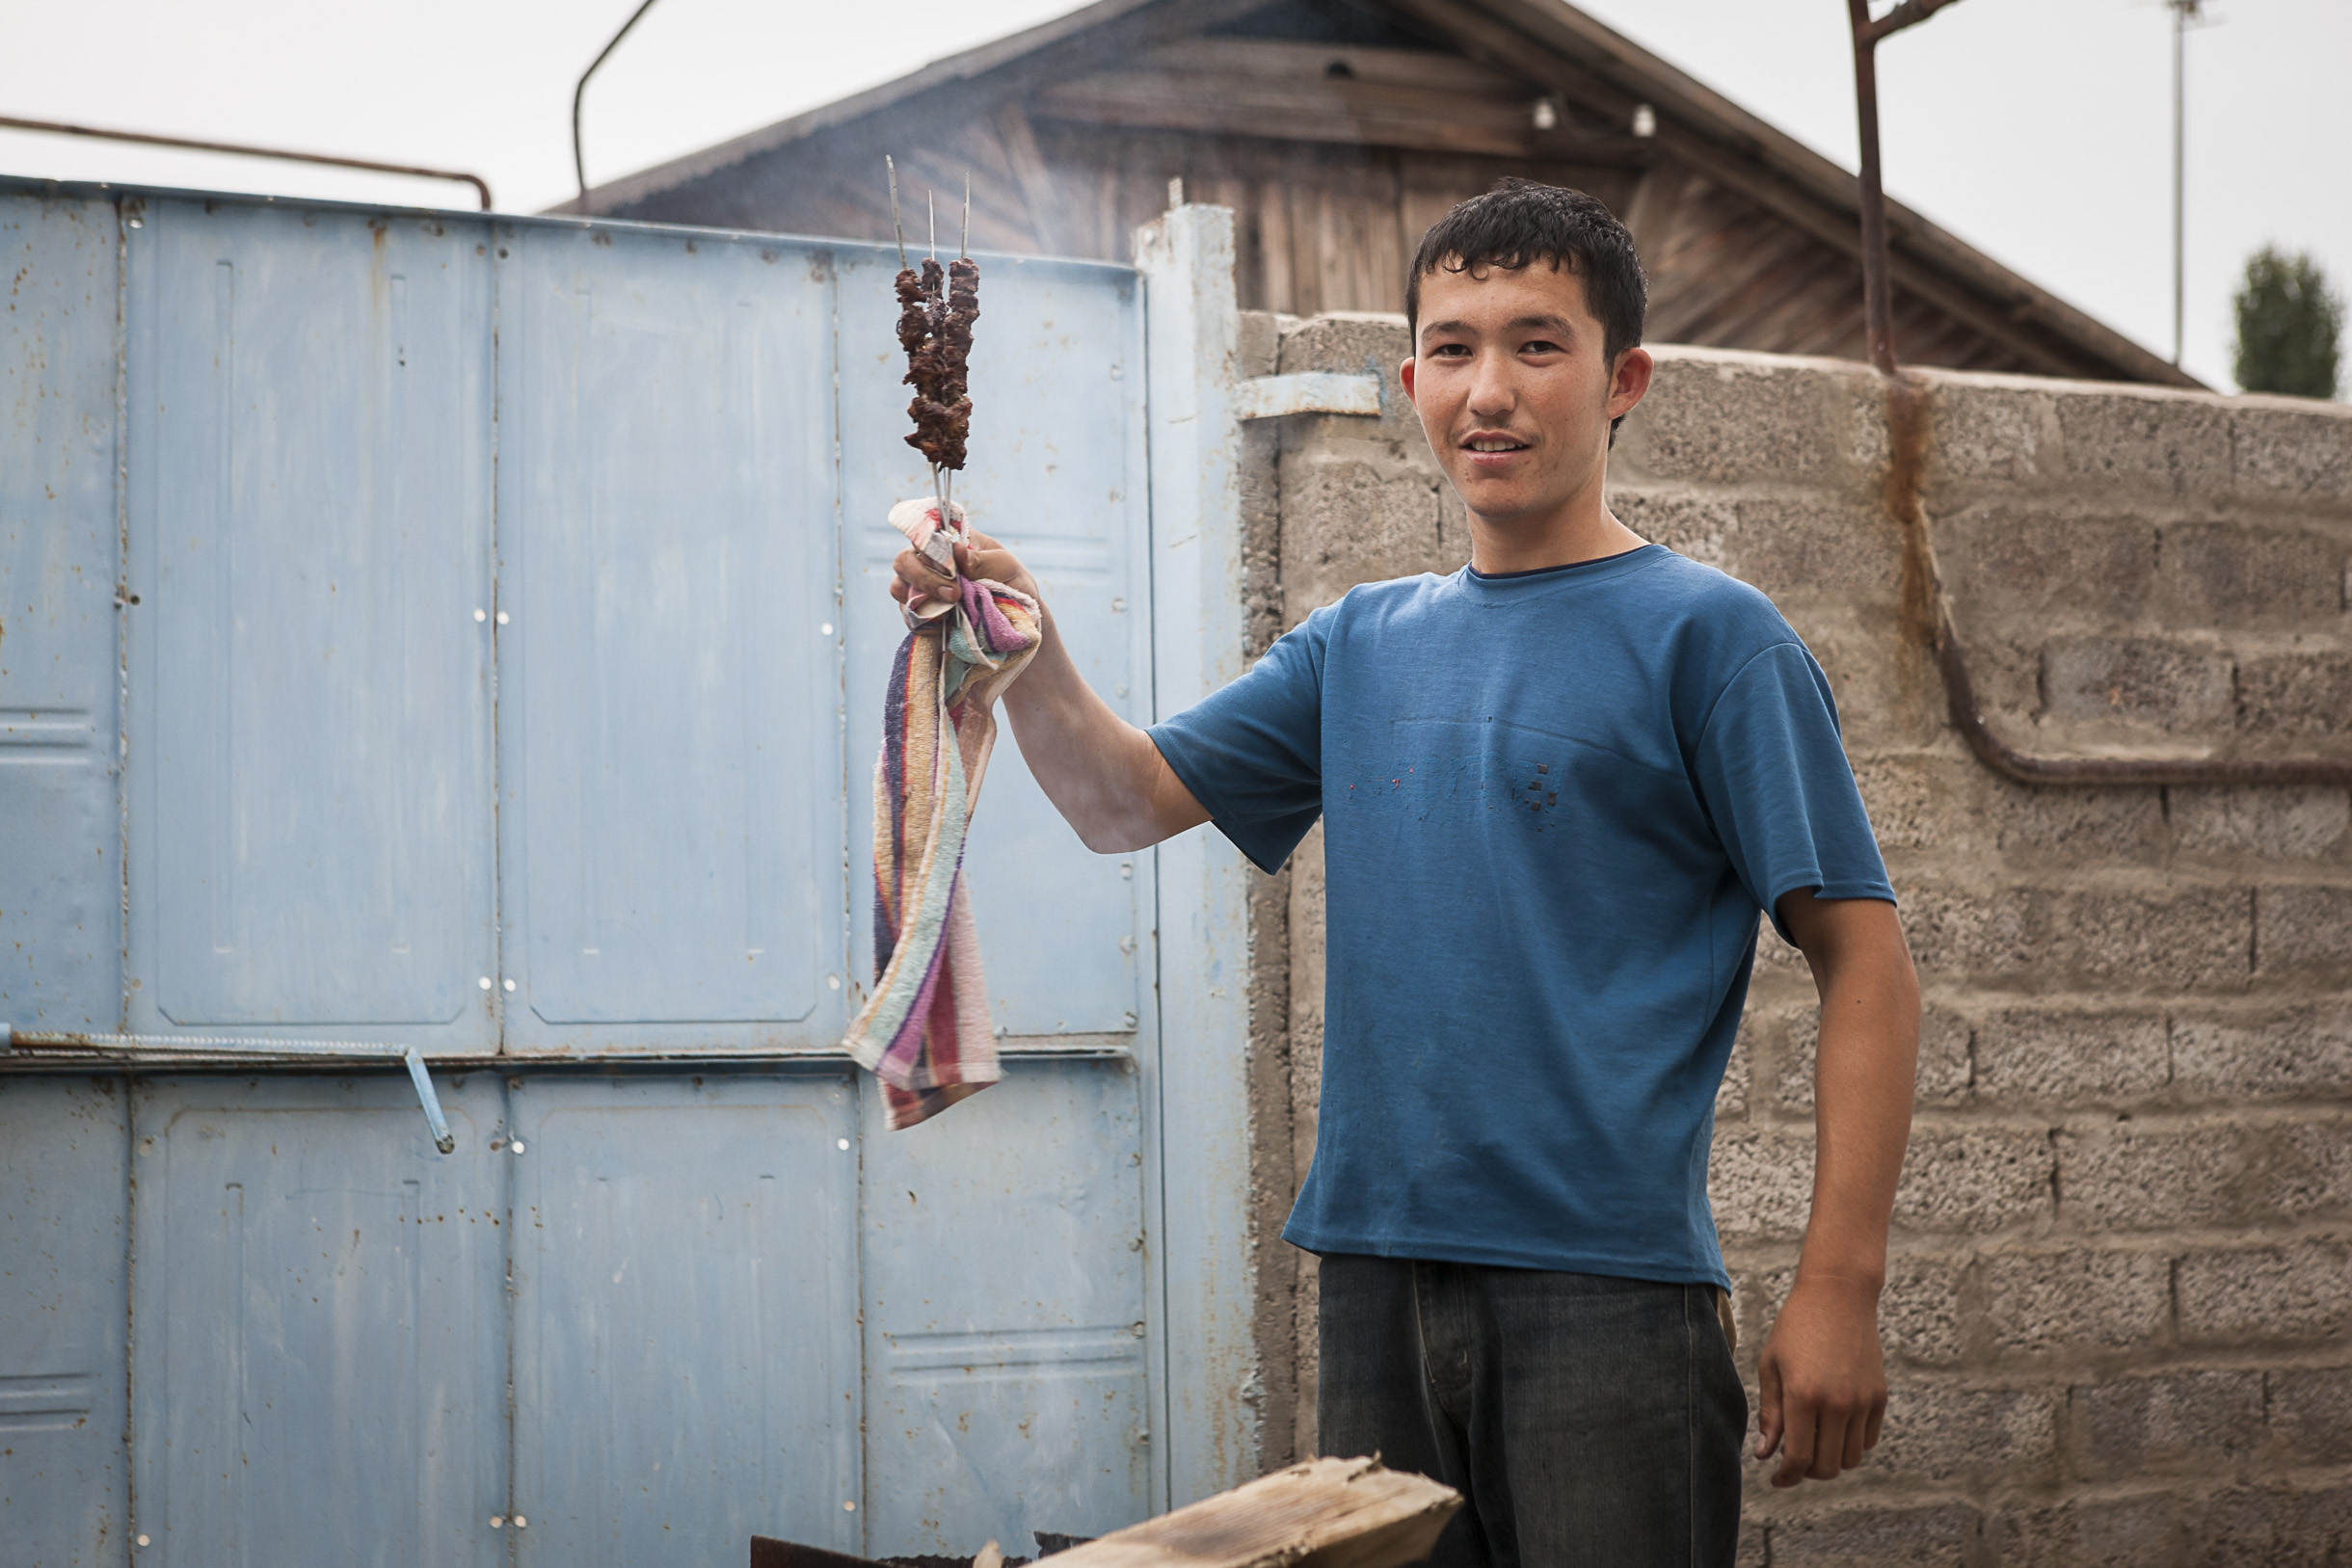 Tous les métiers sont possibles pour les jeunes ouzbeks.